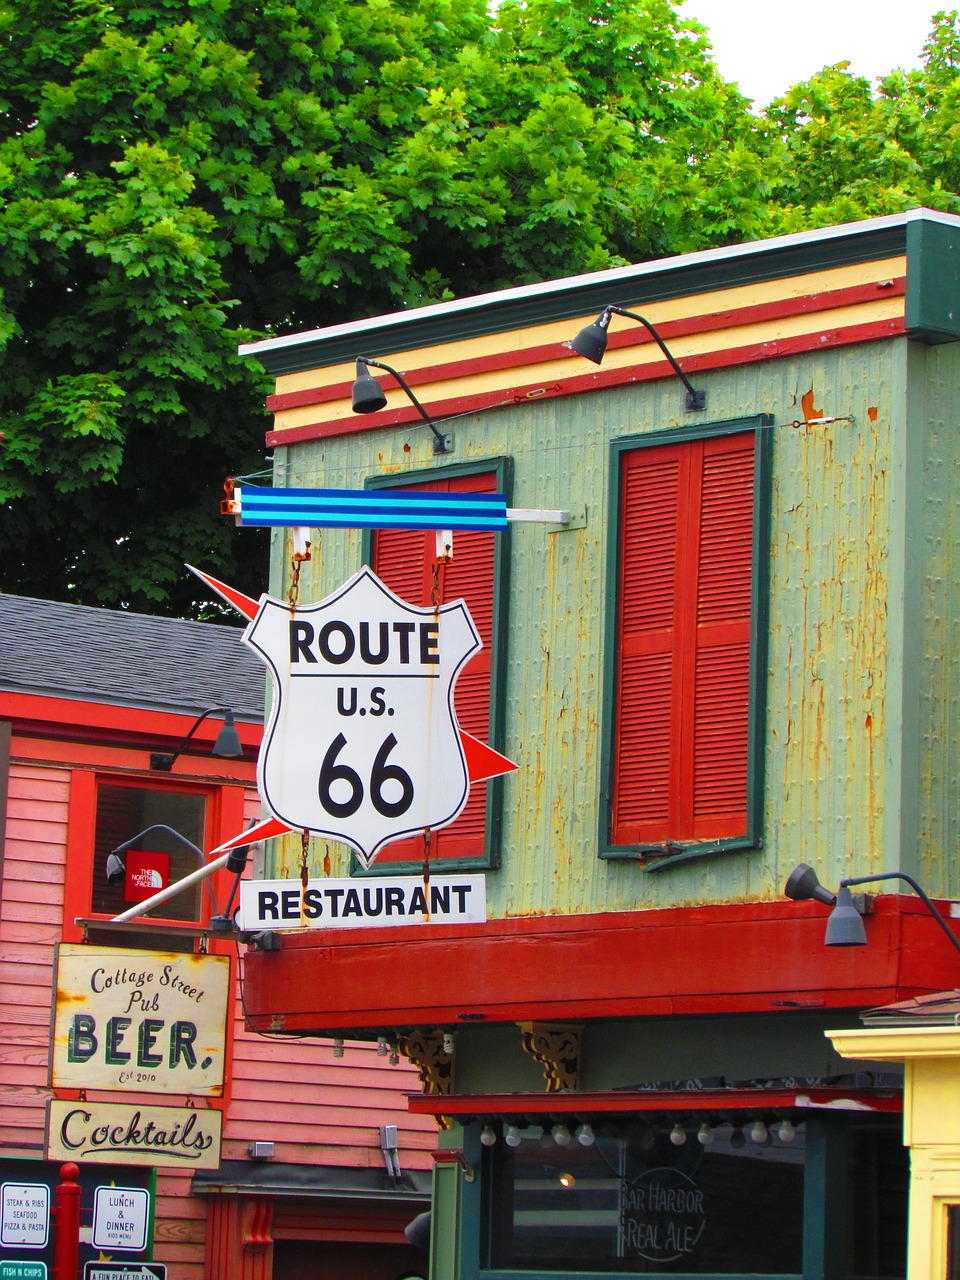 On trouve sur tout le trajet des clins d’oeils nostalgiques : anciennes stations essences, les vieilles voitures américaines, les diners typiques des années 50…©revamerica/pixabay